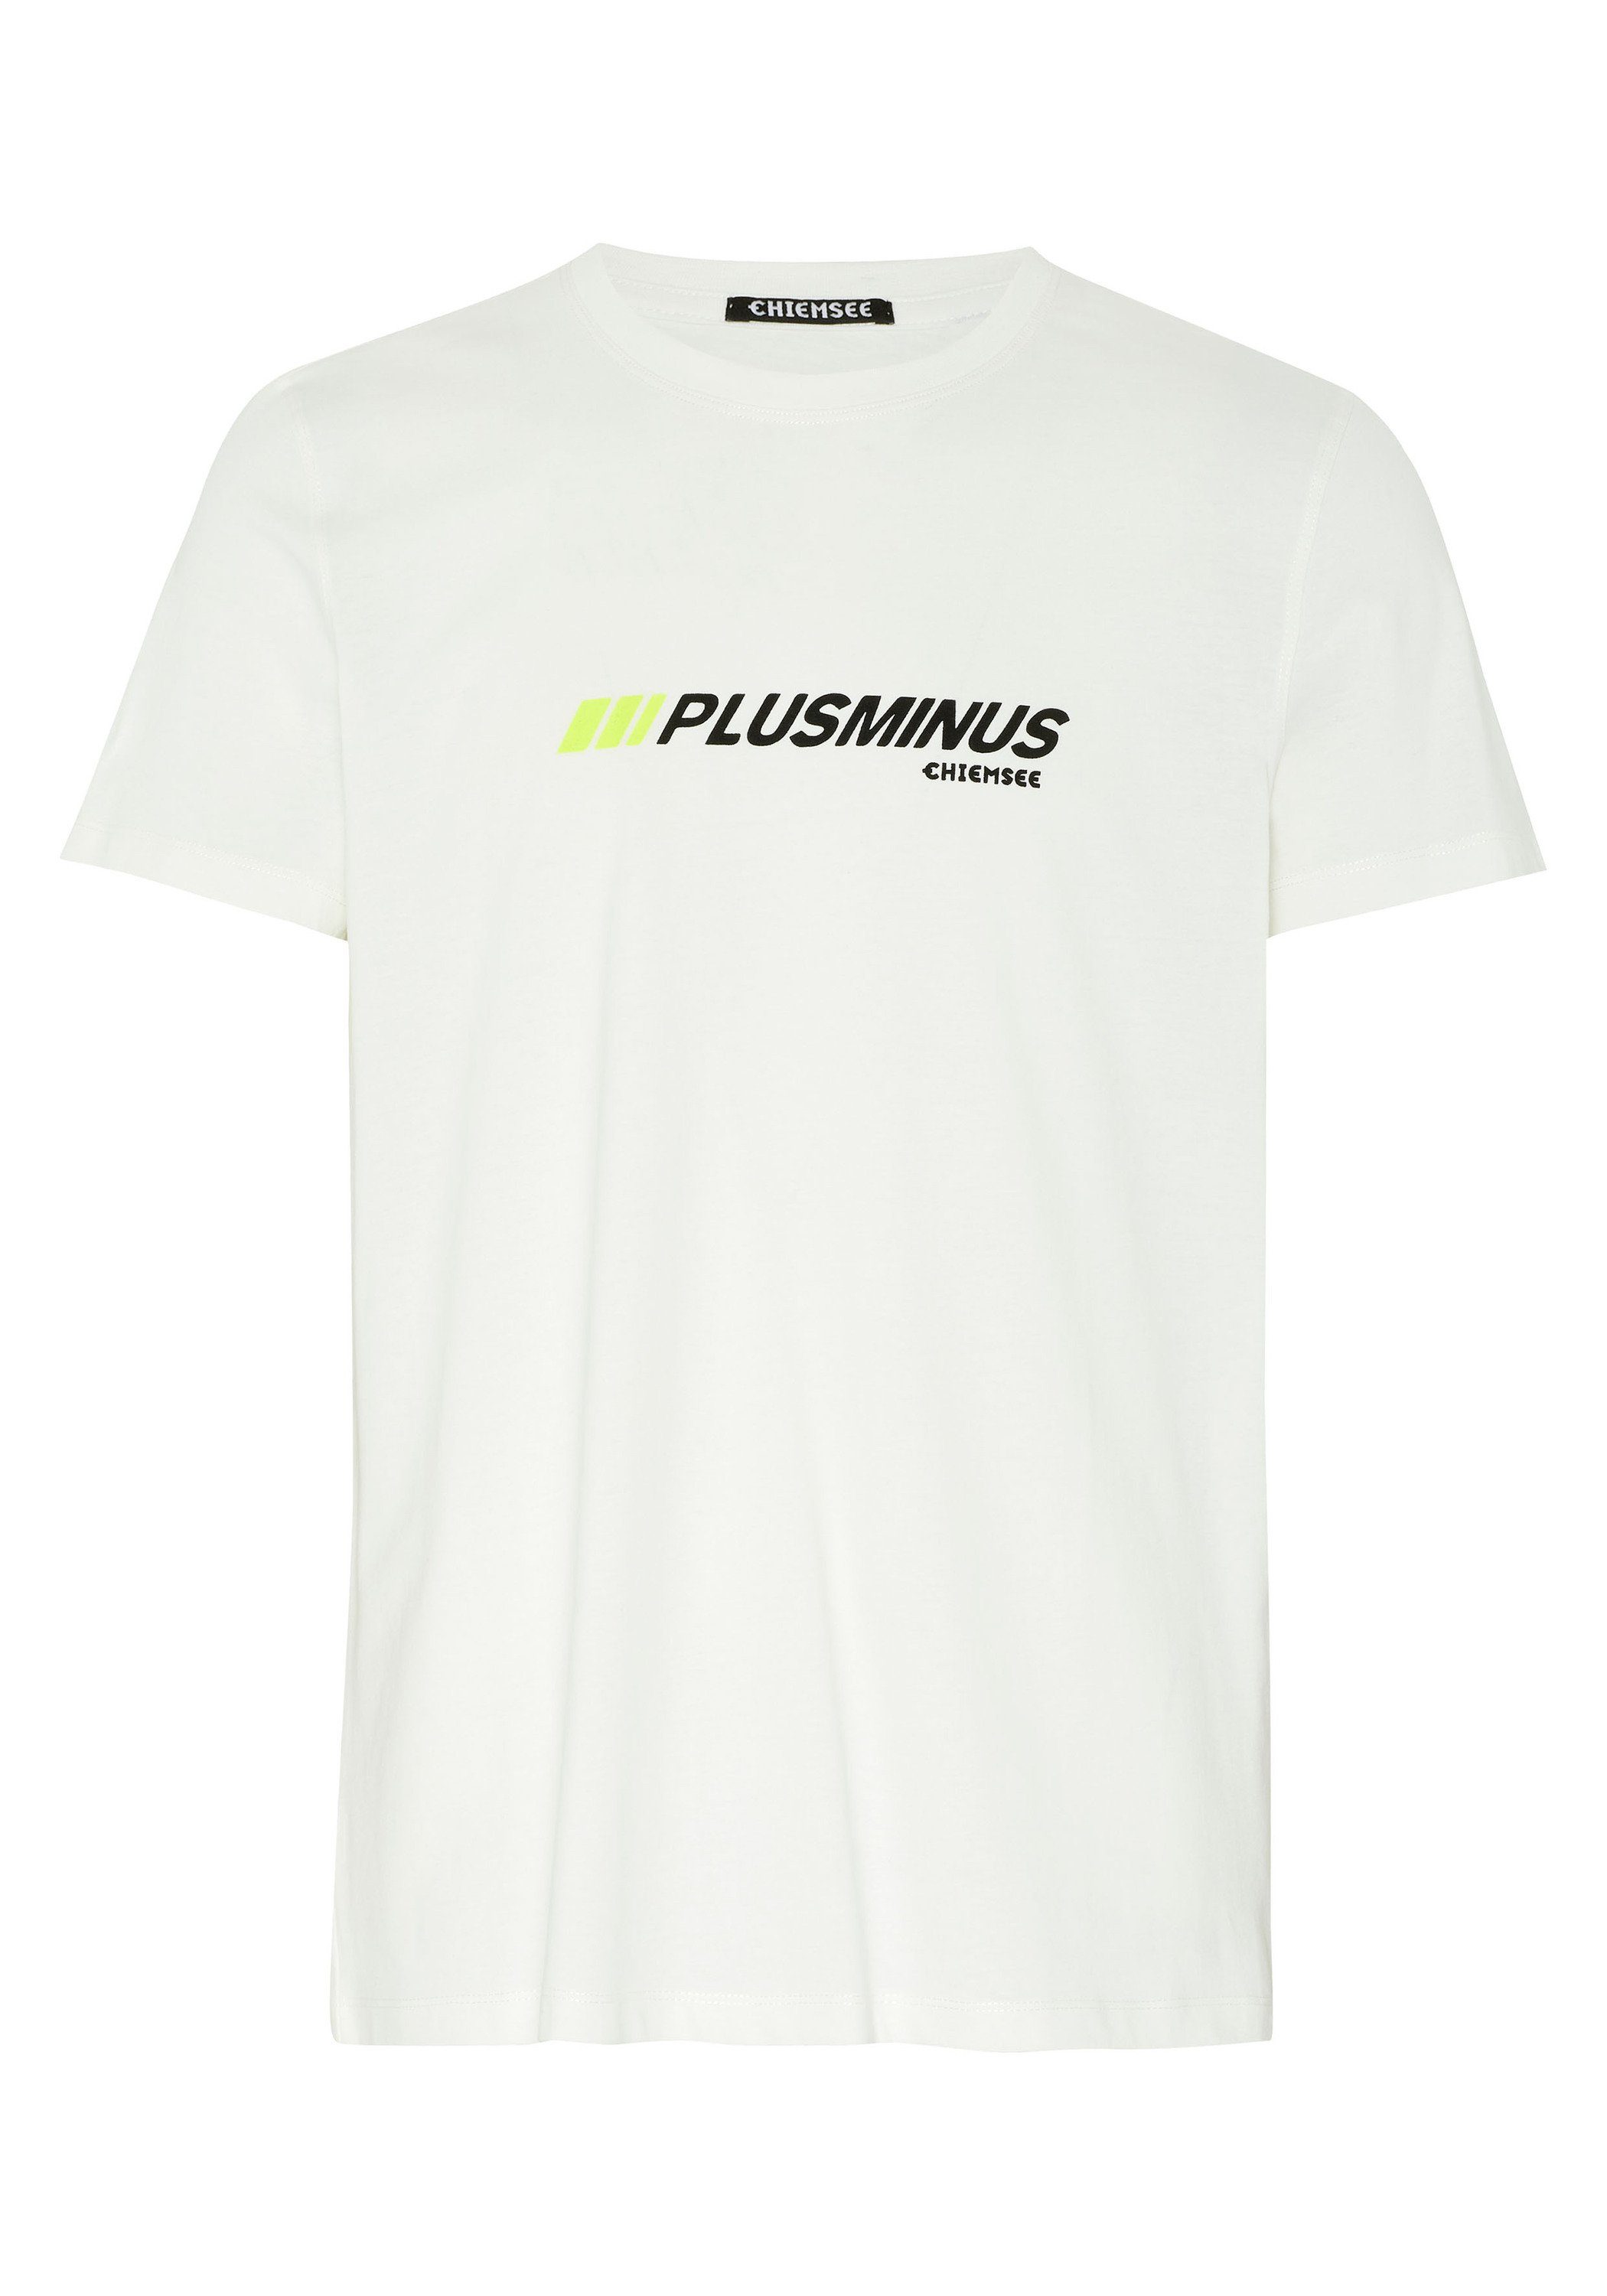 mit T-Shirt 1 Print-Shirt Chiemsee PLUS-MINUS-Print